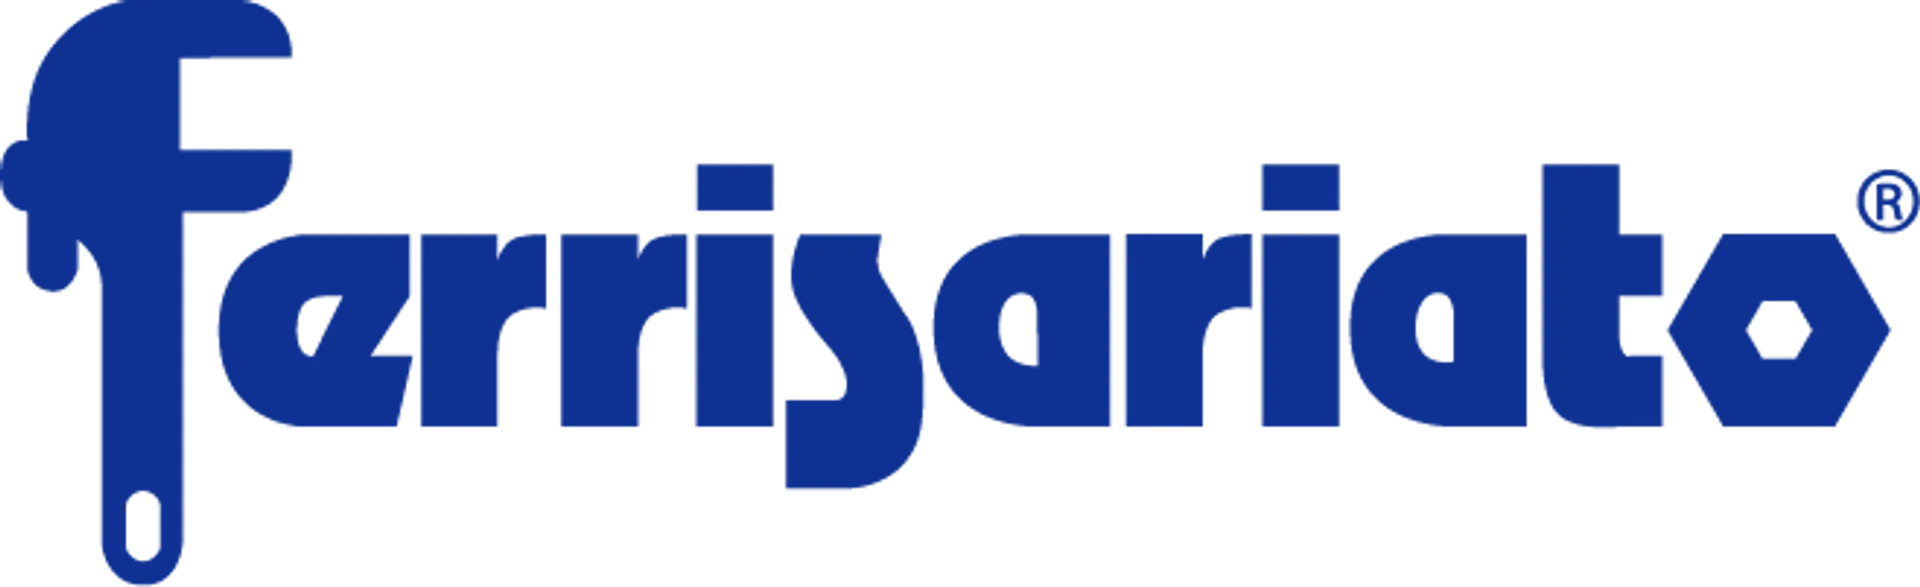 FERRISARIATO logo de catálogo